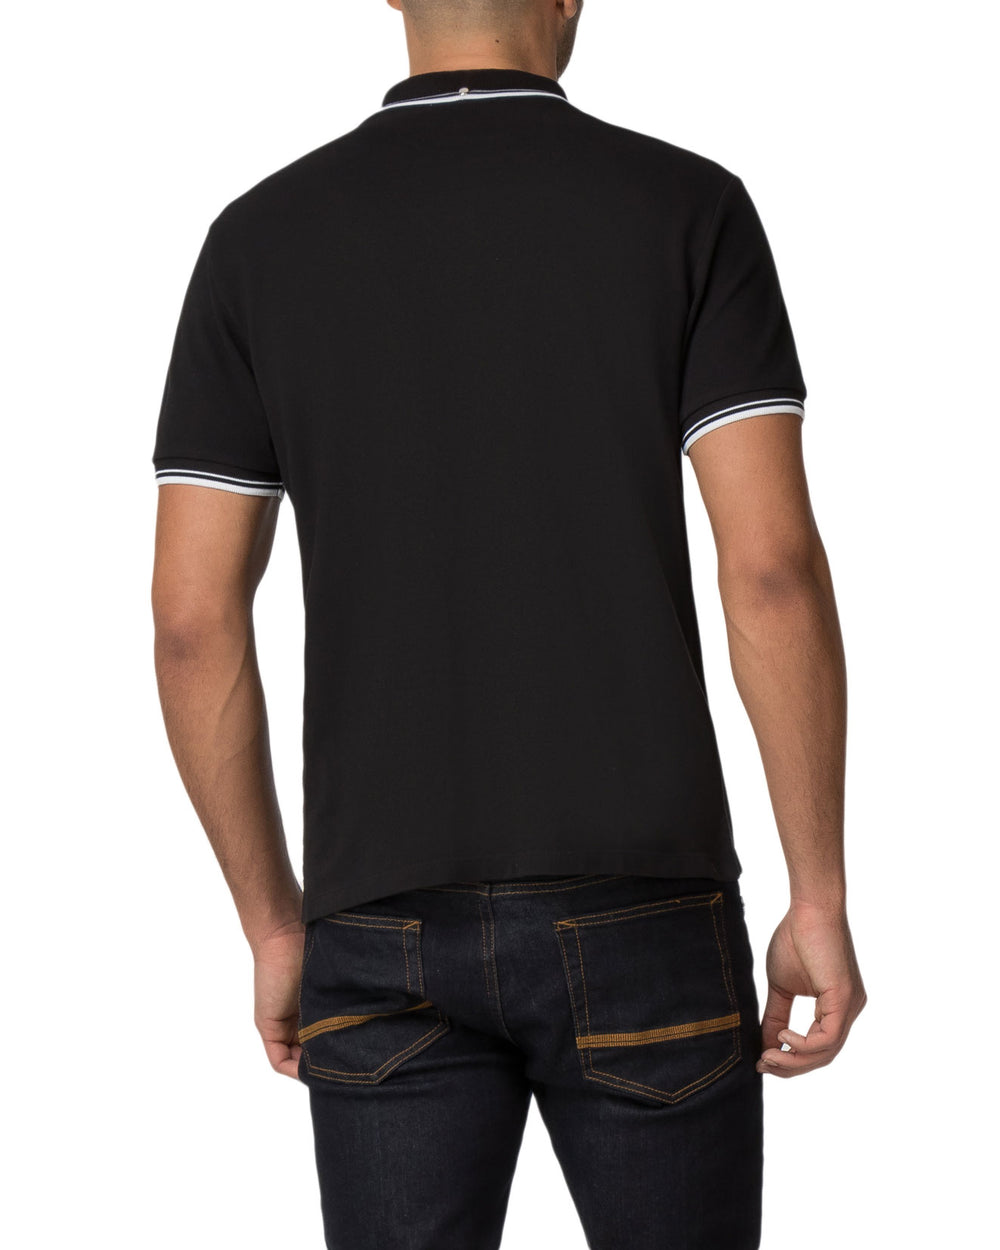 Romford Polo Shirt - True Black